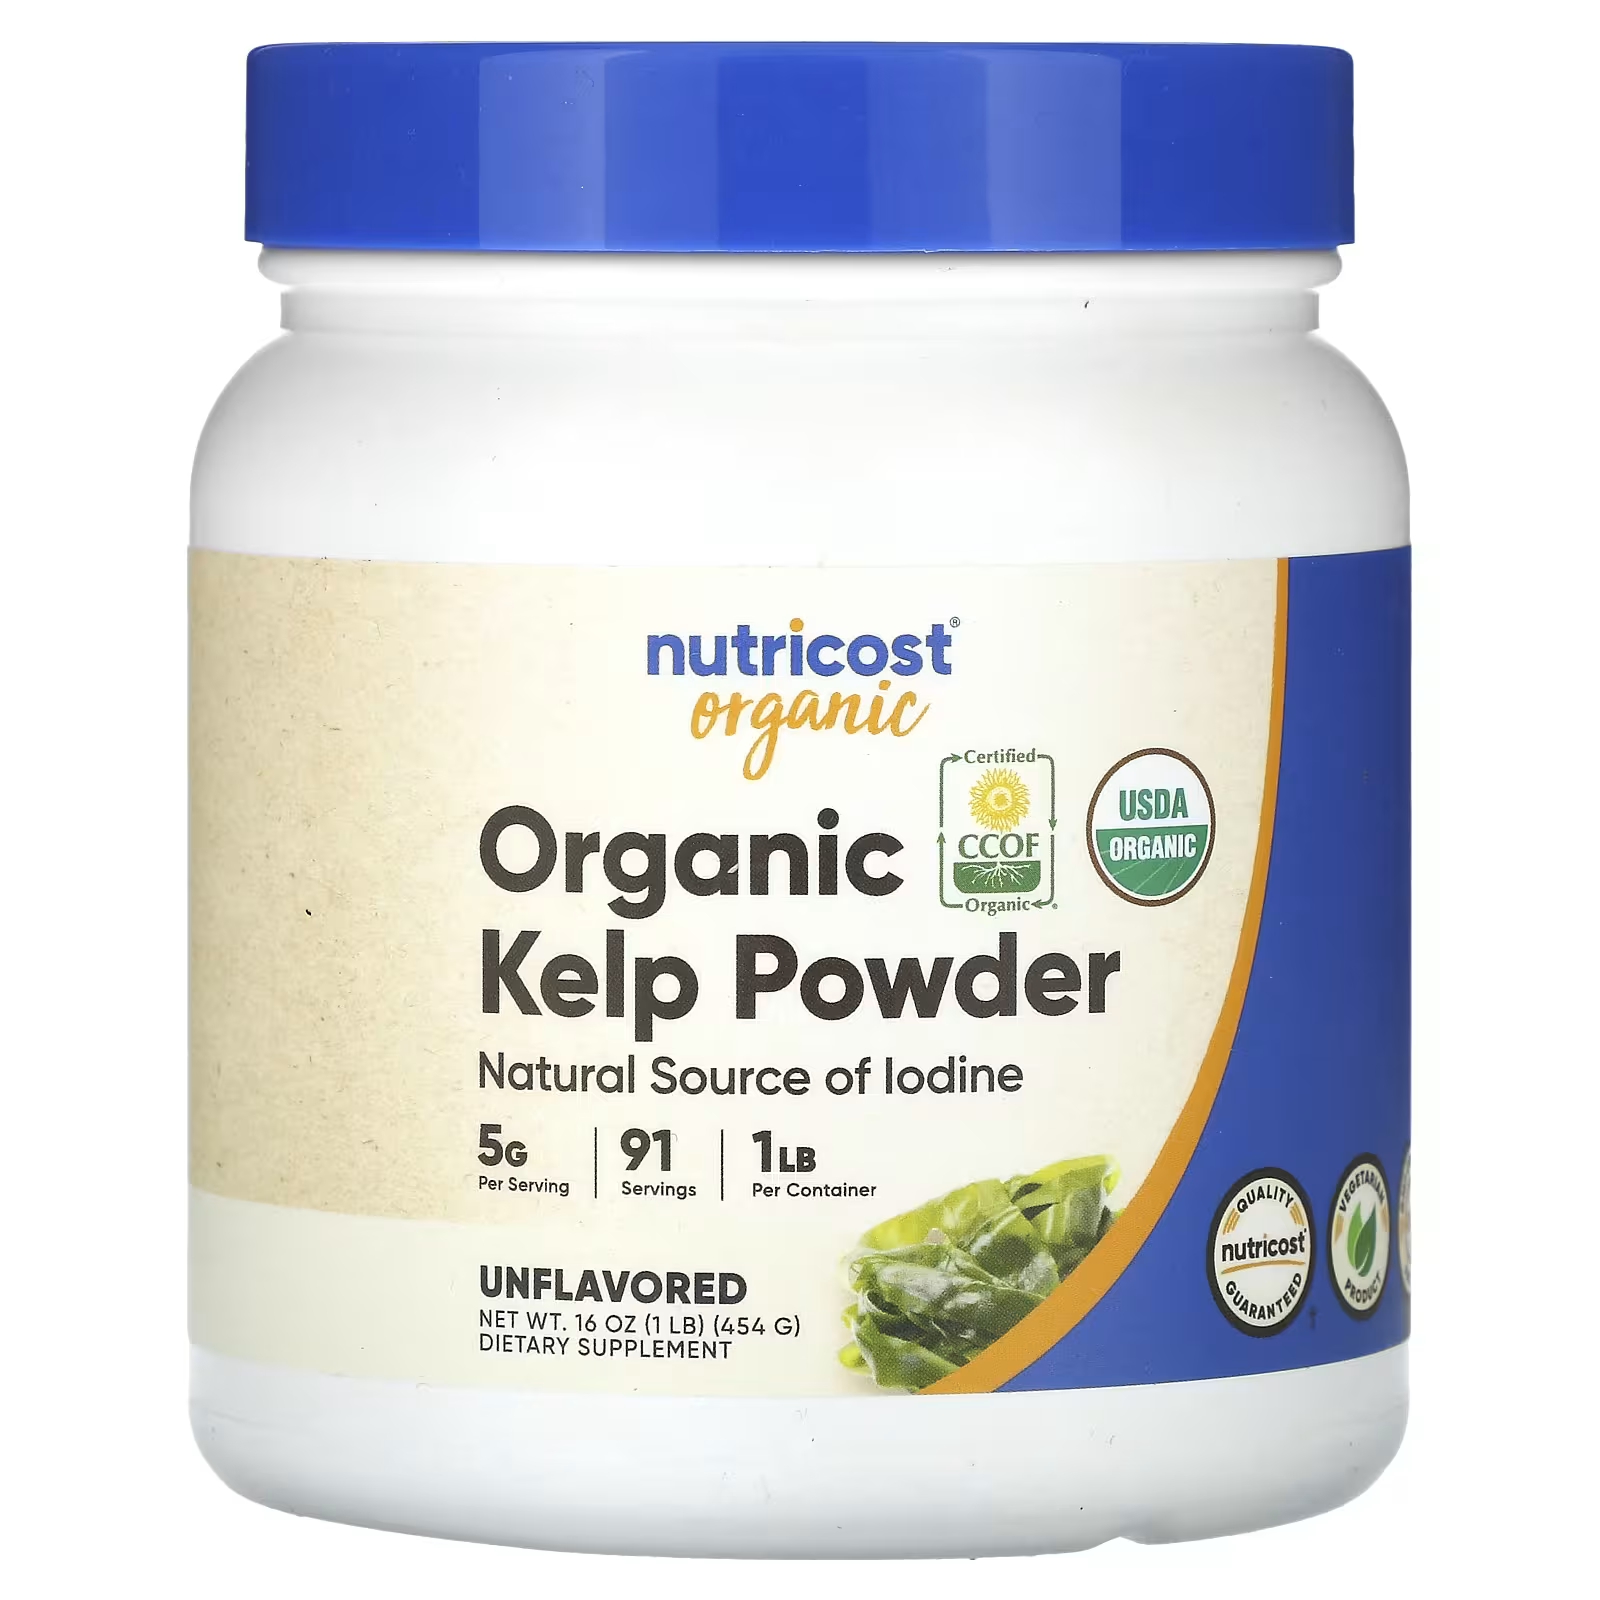 Nutricost Органический порошок водорослей без вкуса, 1 фунт (454 г) nunaturals органический какао порошок 454 г 1 фунт